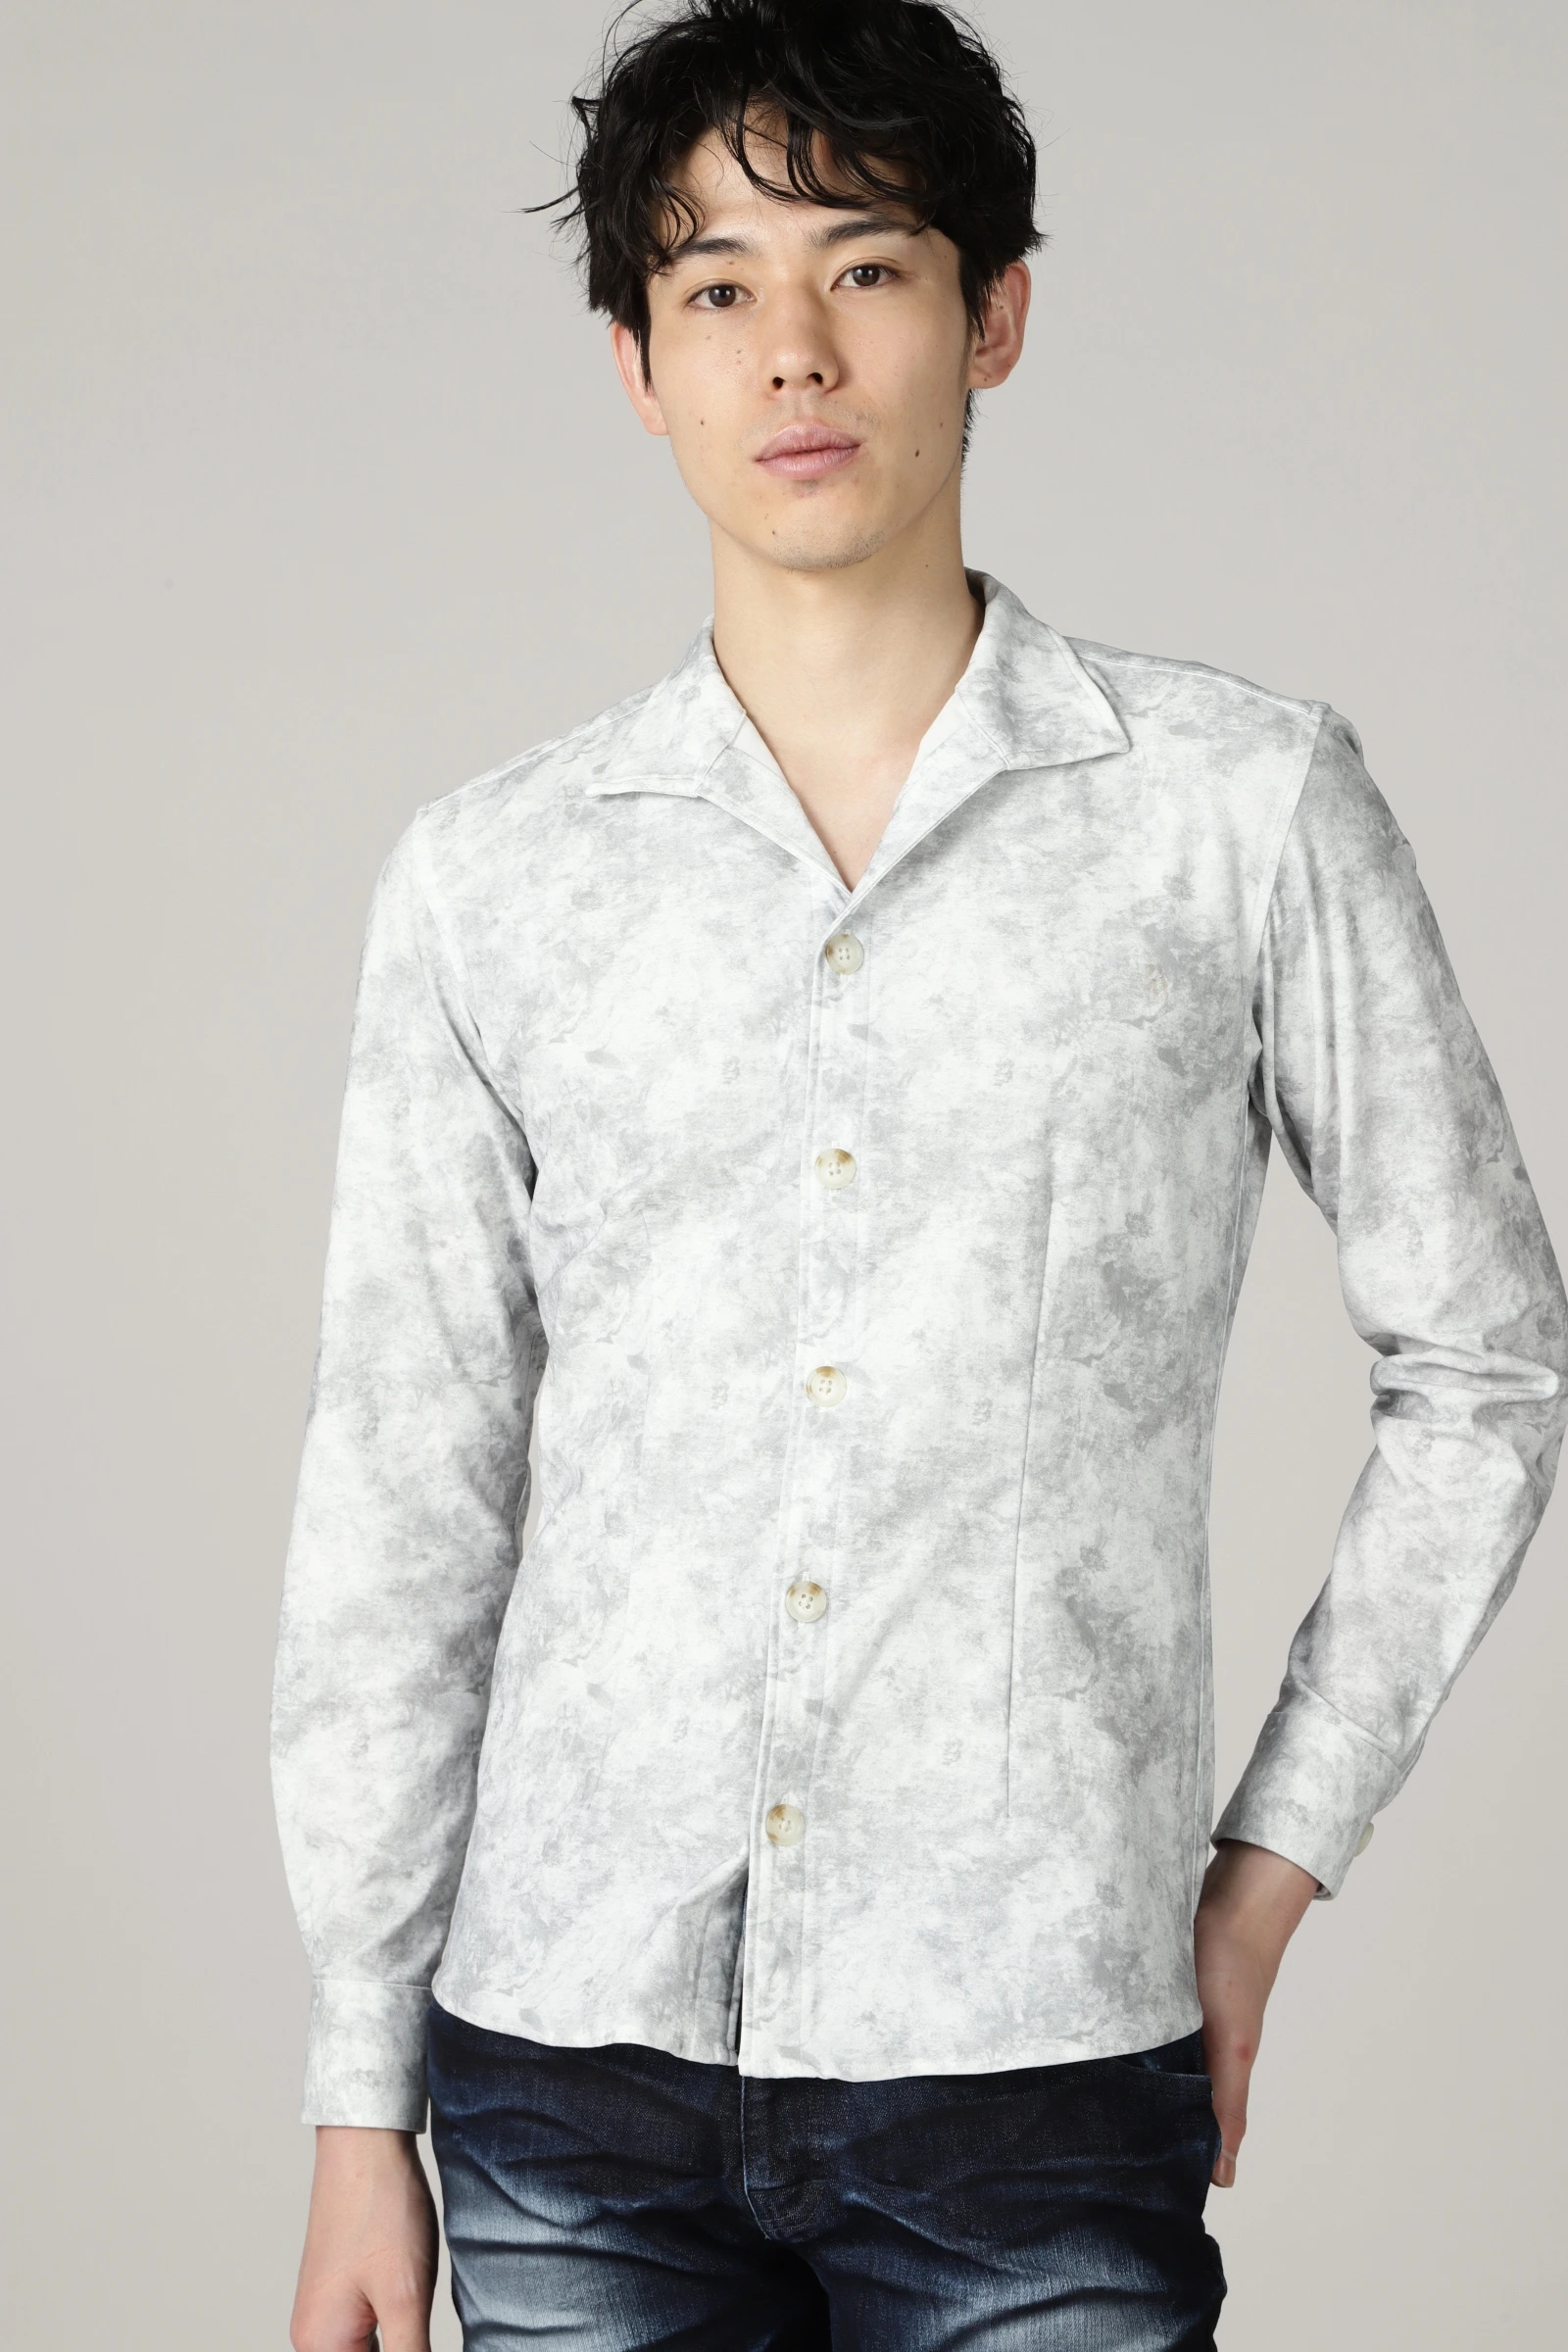 日本代理店正規品 トルネードマートのシャツジャケットです。 | phemida.ru